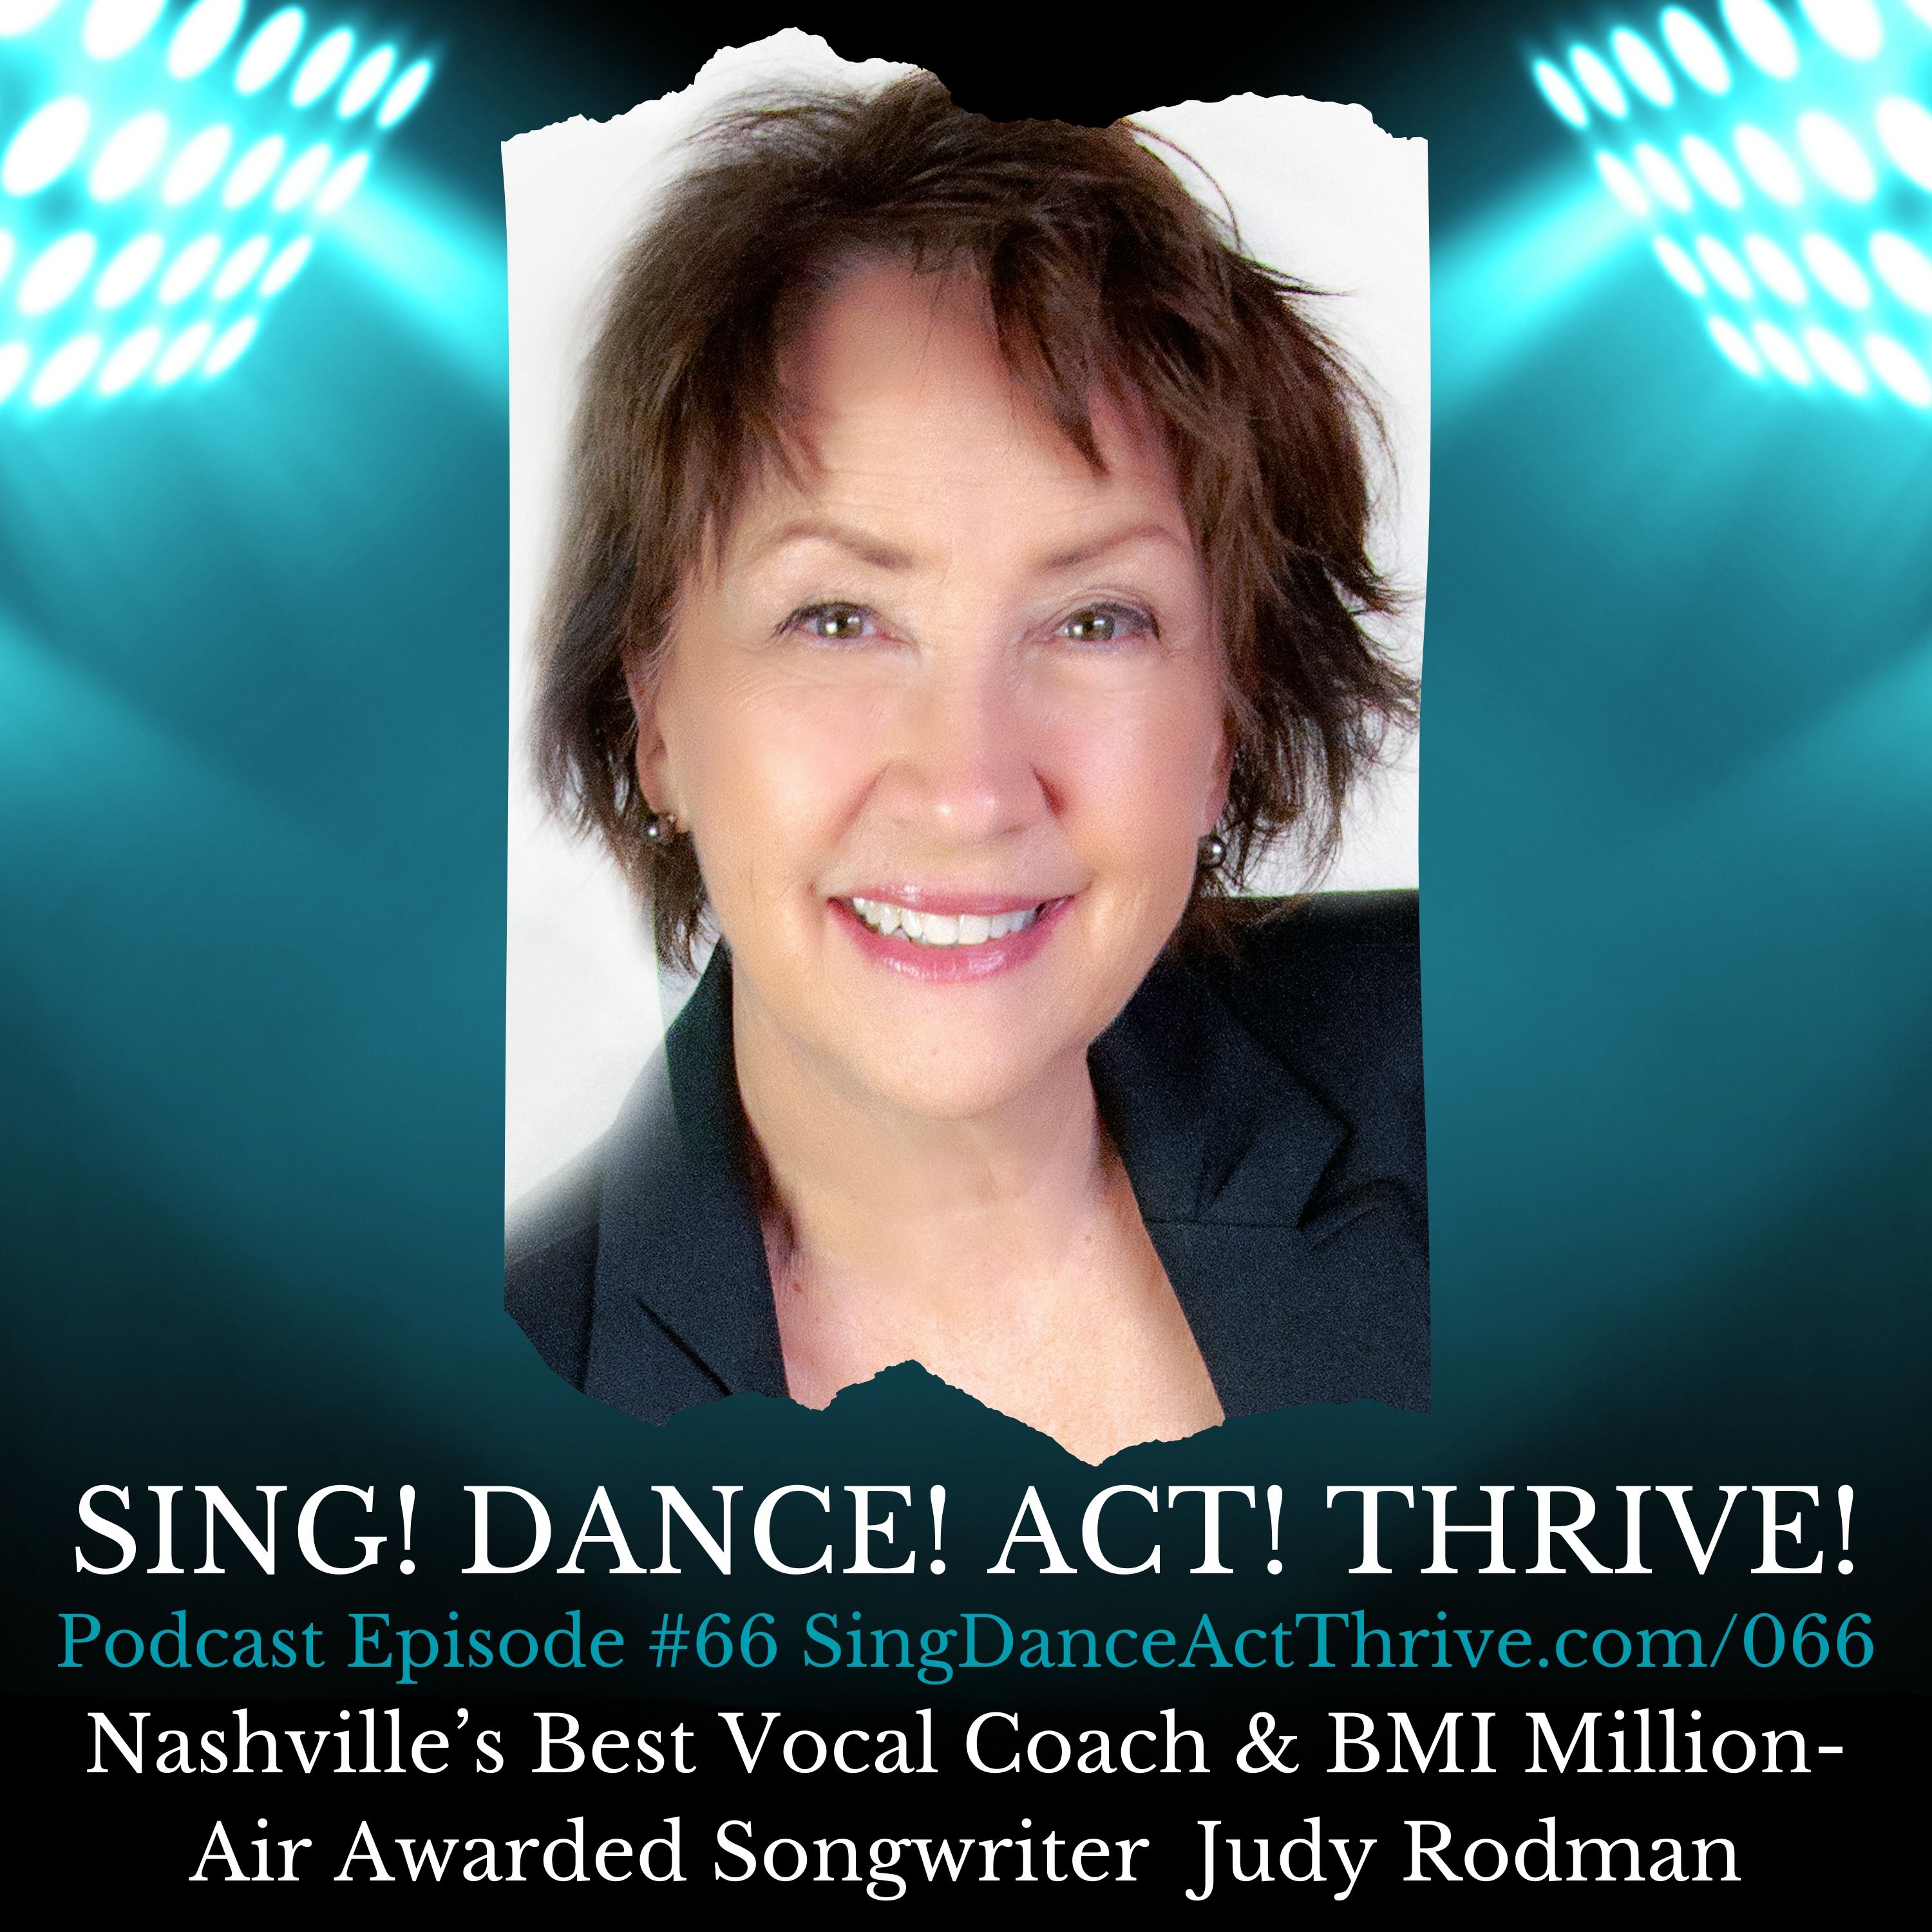 Nashville’s Best Vocal Coach & BMI Million-Air Awarded Songwriter  Judy Rodman hero artwork